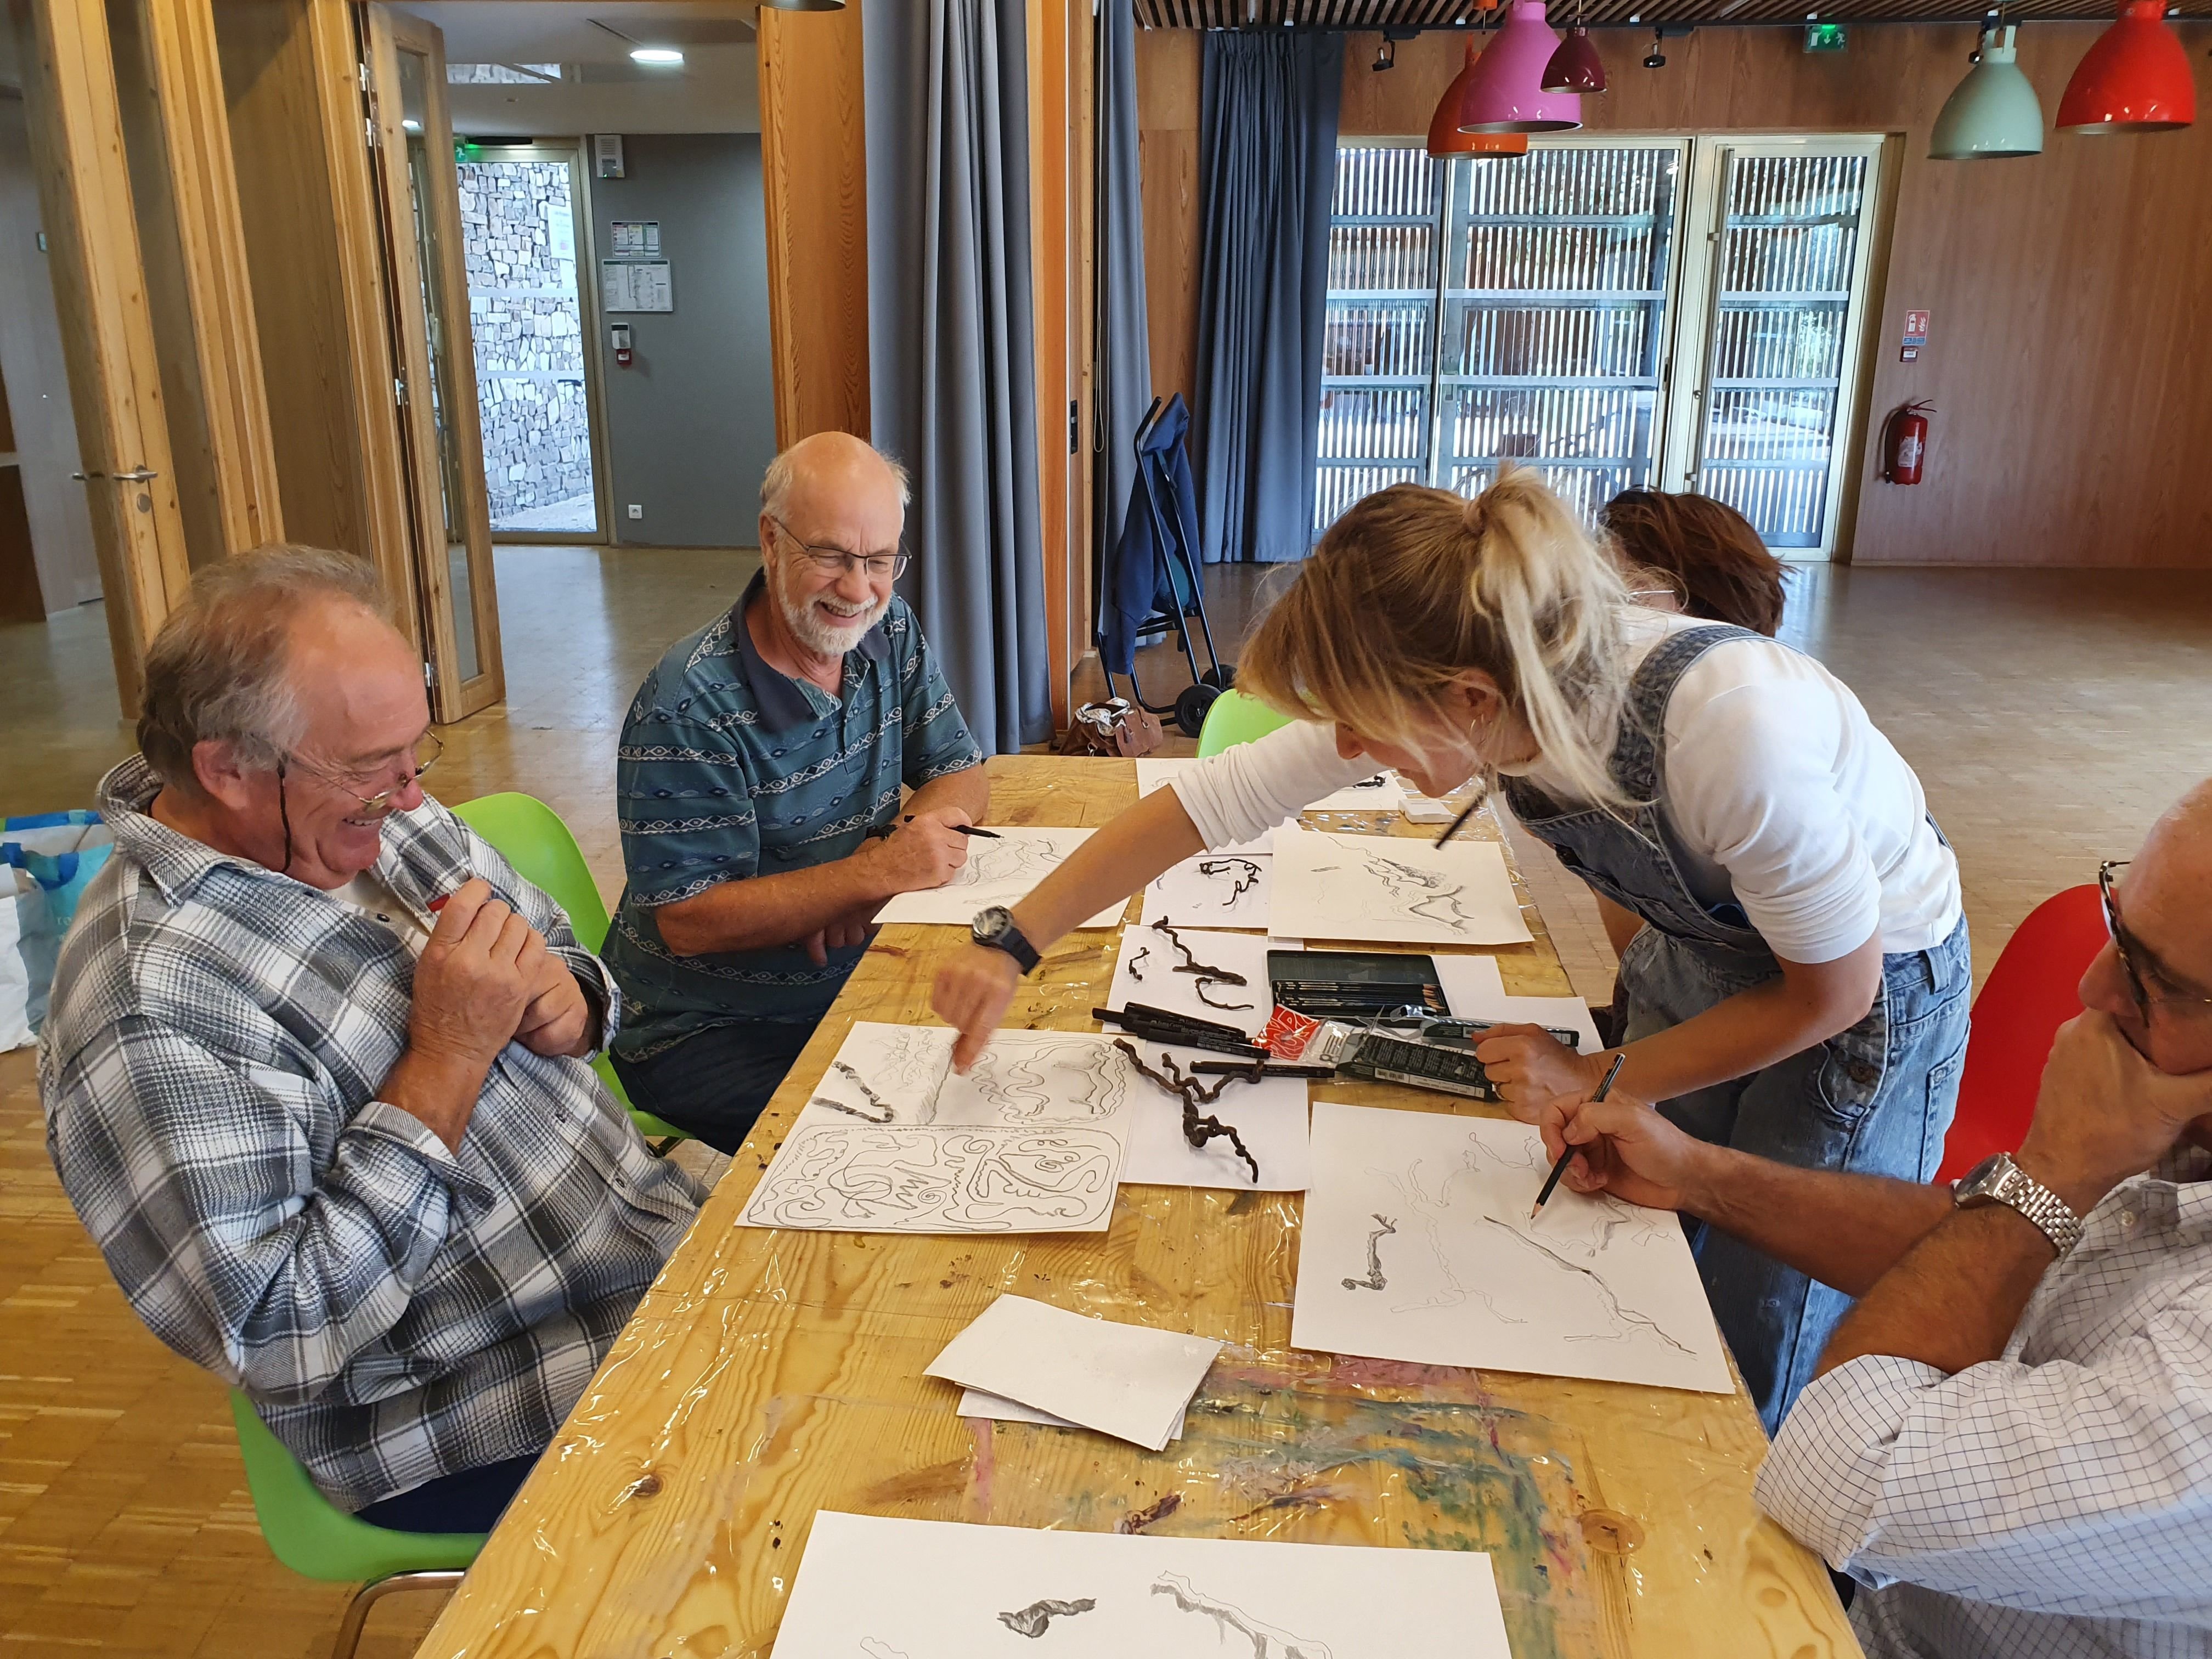 A Calce (Pyrénées-Orientales), l'artiste Hanni Angermann a animé des ateliers ouverts avec les habitants , de 7 à 77 ans ! 3C